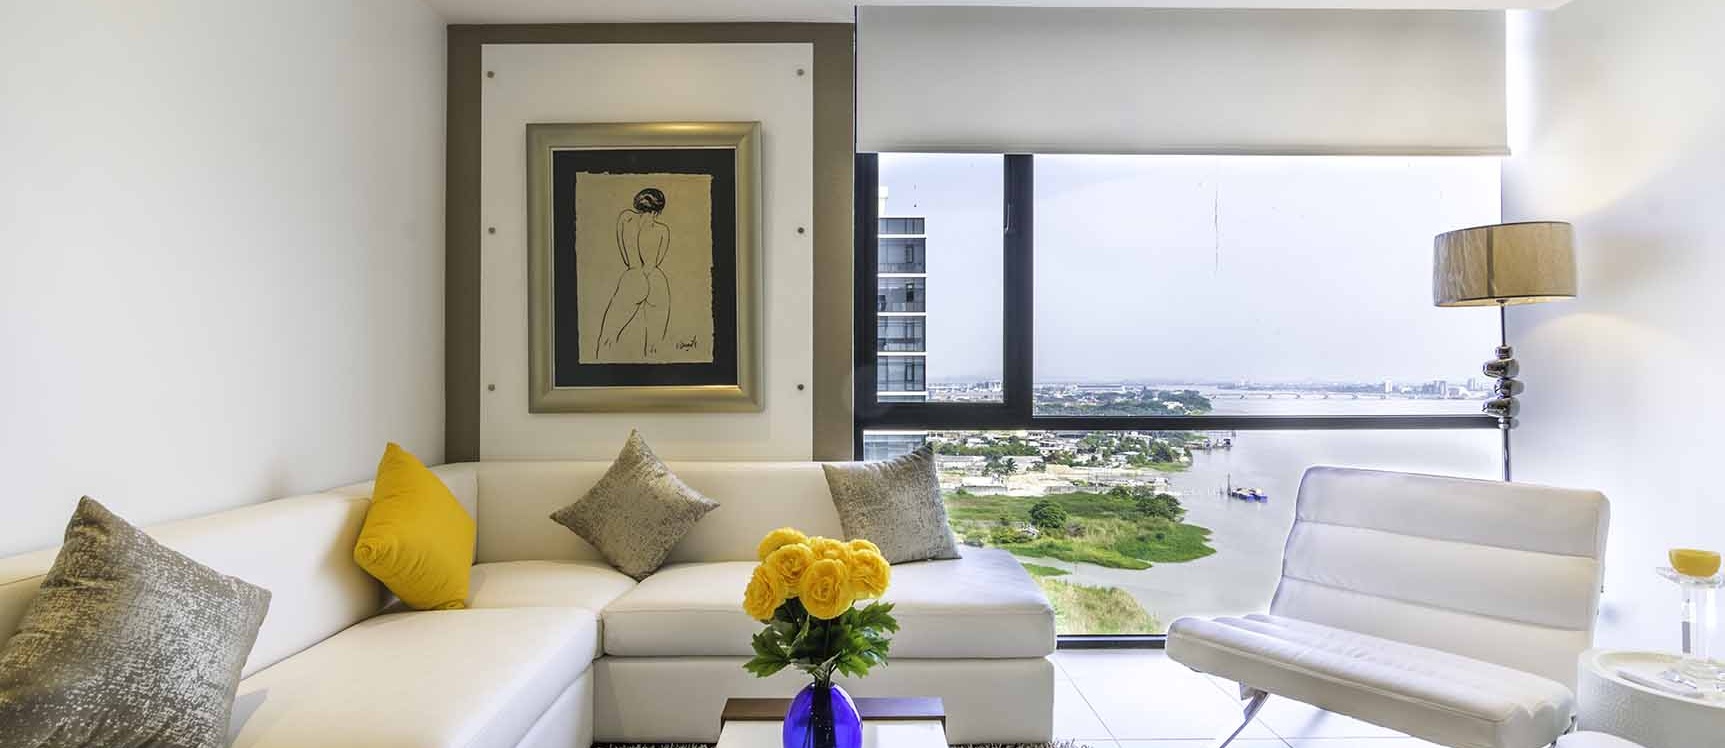 GeoBienes - Suite en venta en Bellini I centro de Guayaquil - Plusvalia Guayaquil Casas de venta y alquiler Inmobiliaria Ecuador